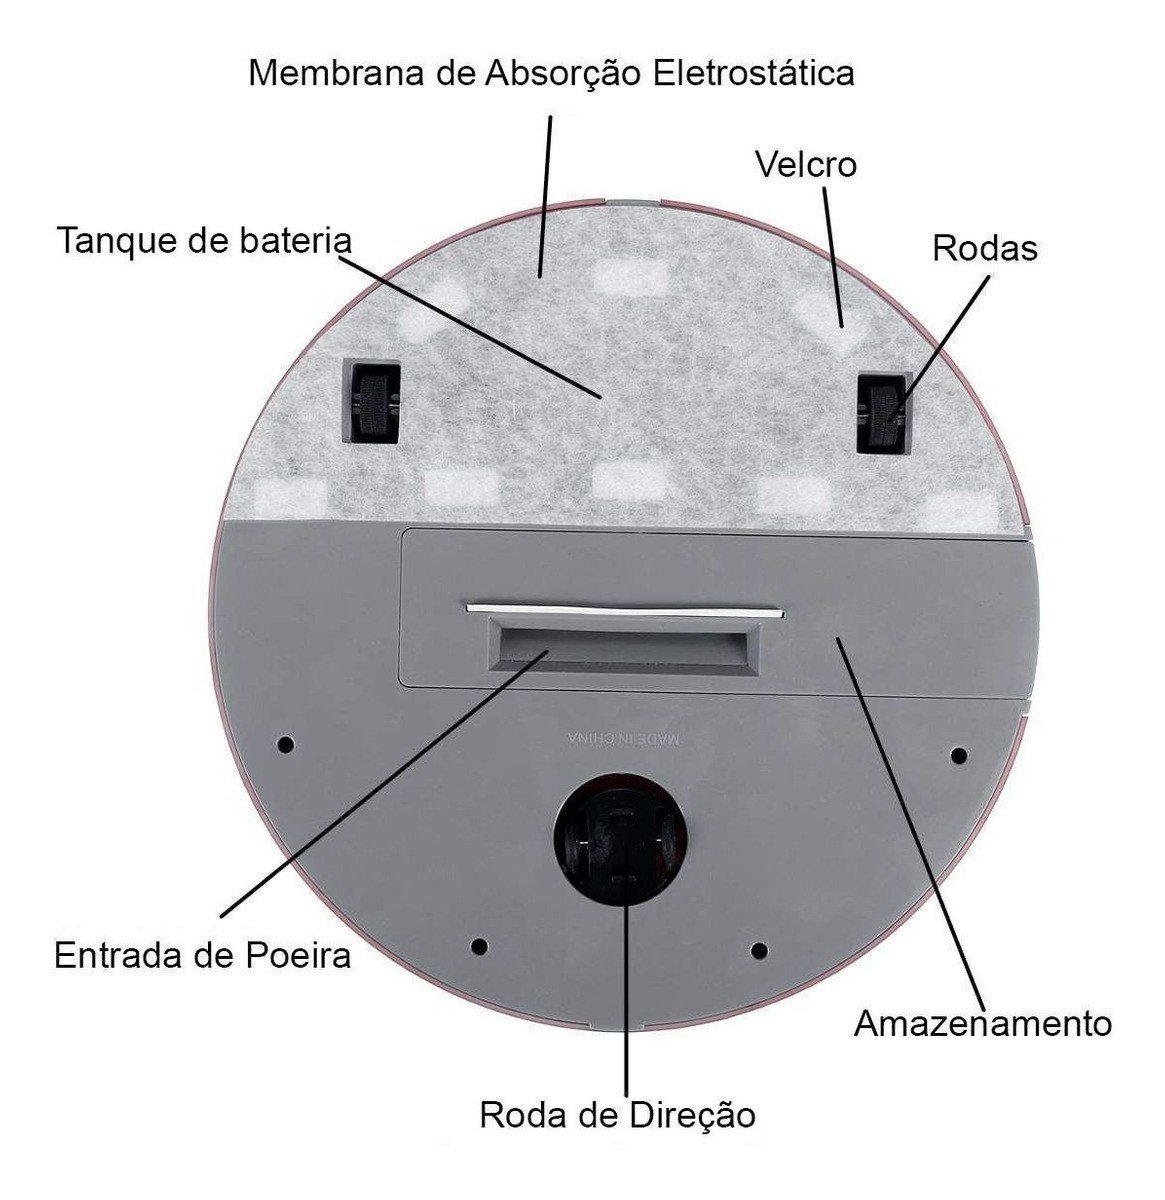 Robo Aspirador Faxina Passa Pano Limpeza Inteligente Sensor Anti Queda Obstaculos Automatico Poeira - 8